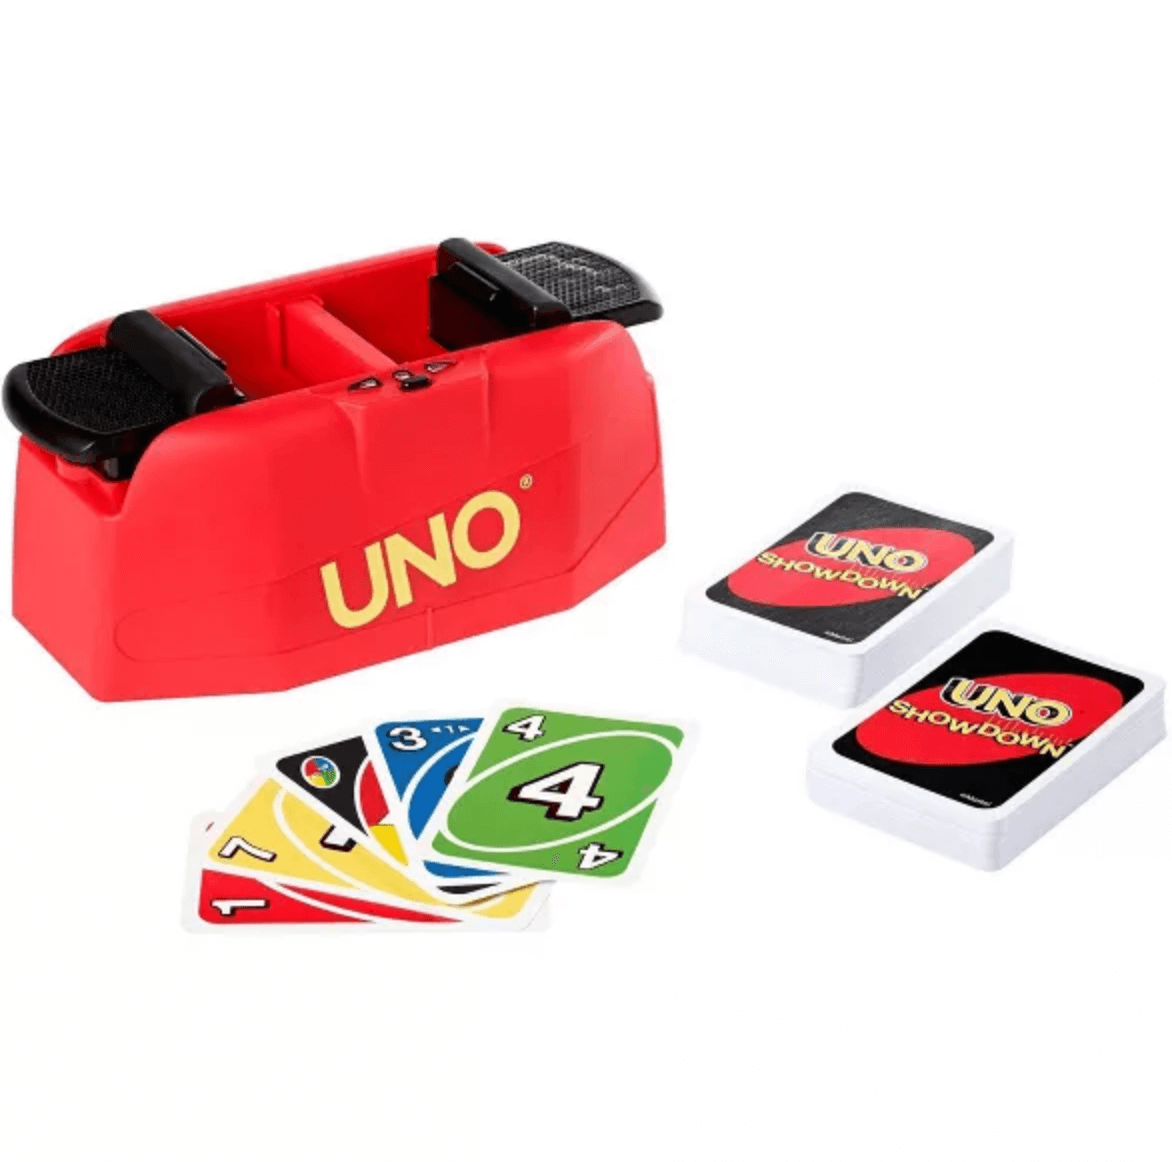 Under $15: Uno Showdown